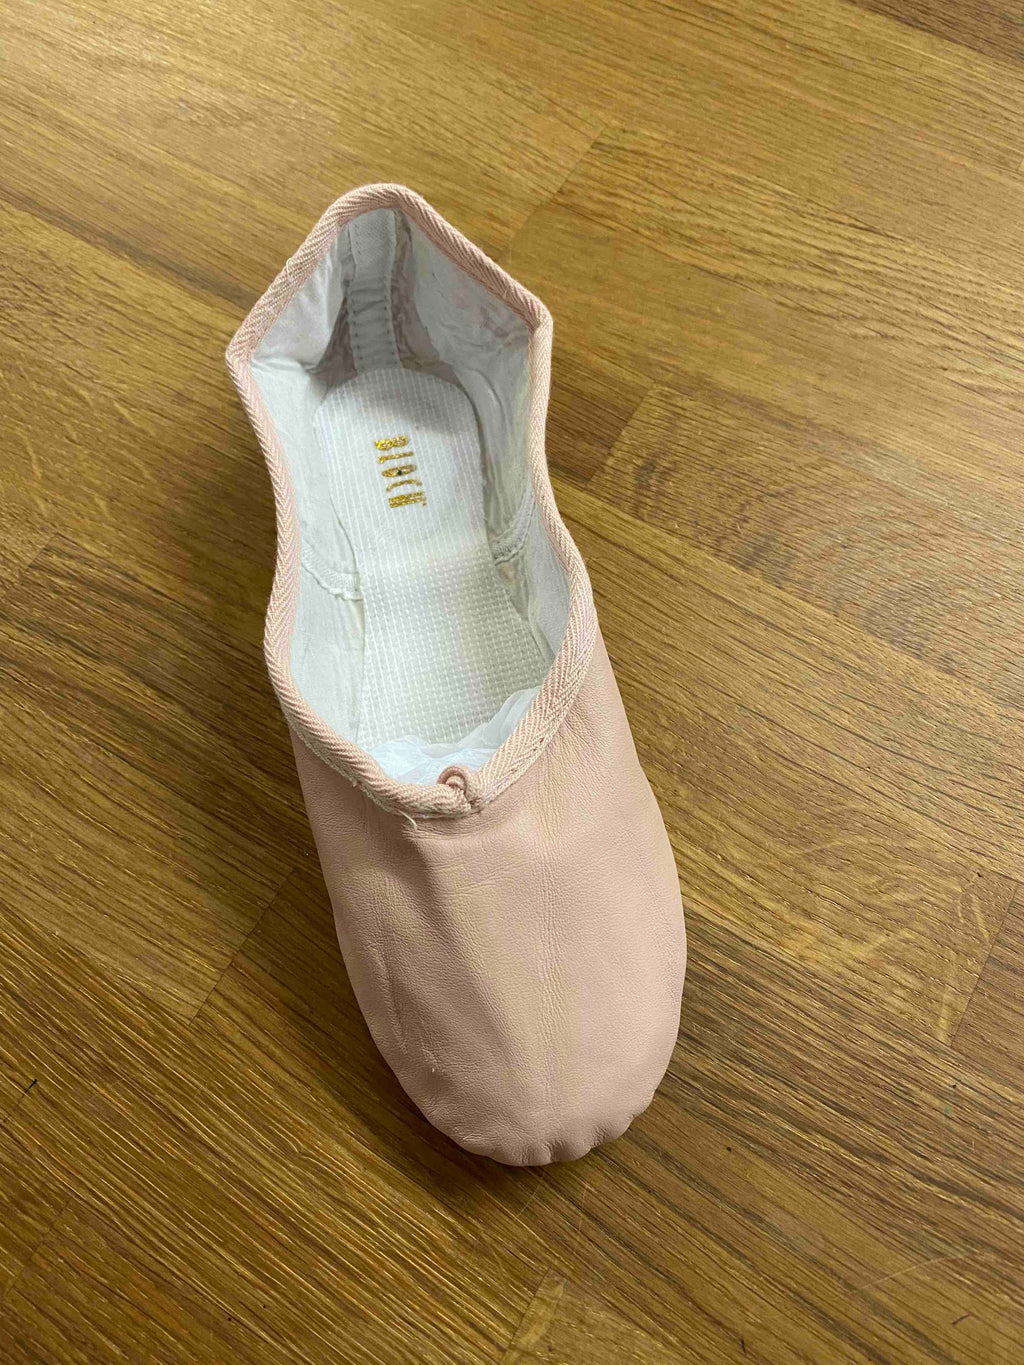 Bloch Pink Leather Split Sole Ballet Shoe S0202